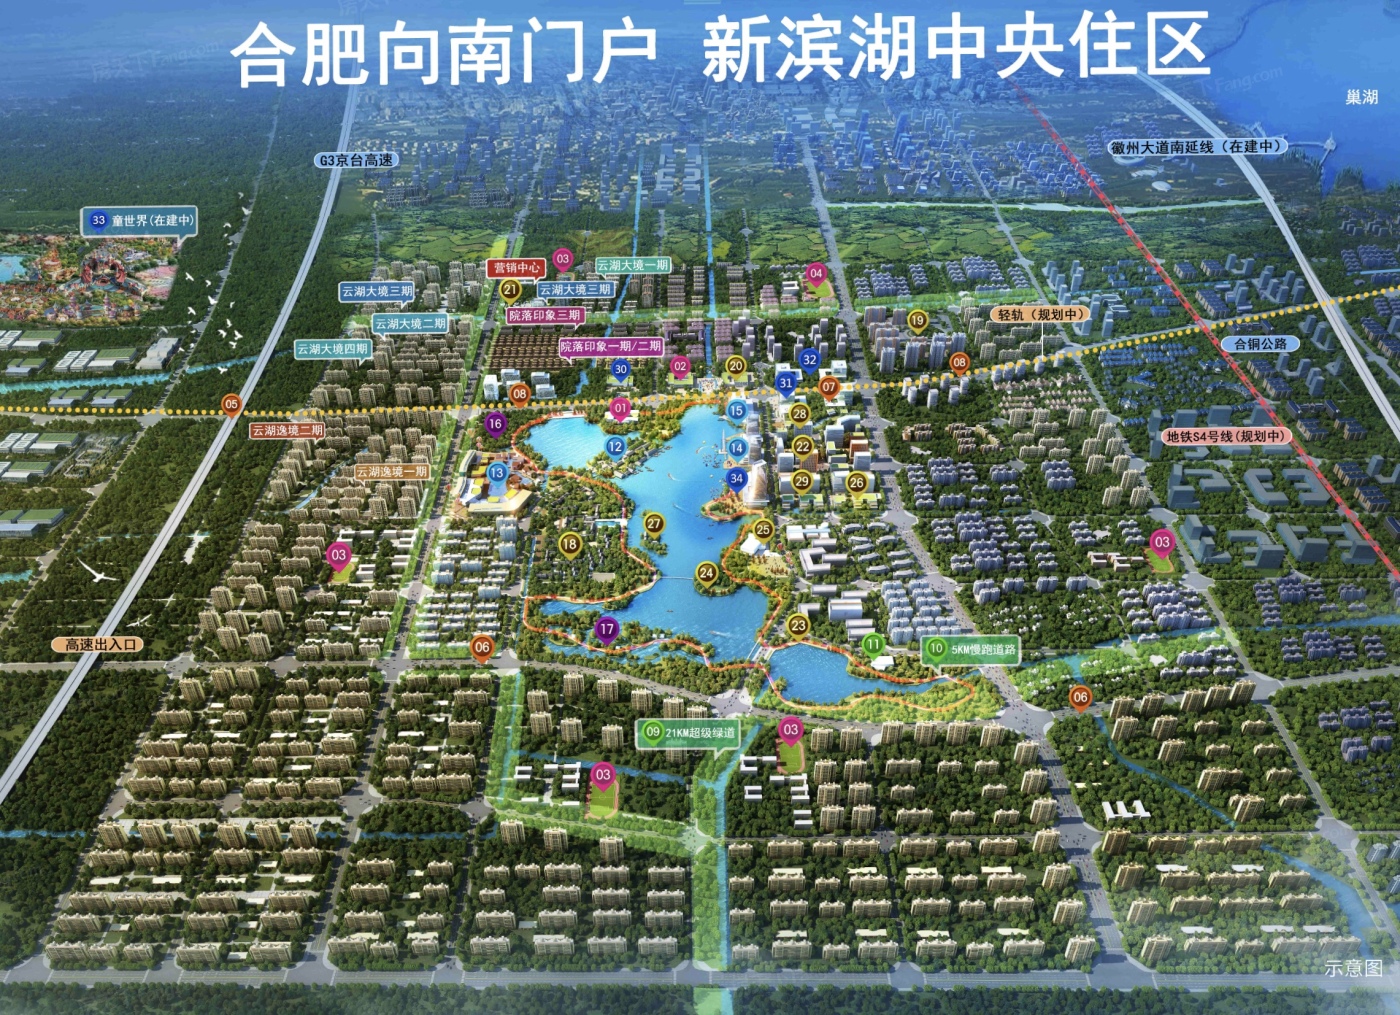 速看！！合肥2022年06月优惠楼盘合辑 新滨湖孔雀城均价6800元/㎡起,包括热门楼盘新滨湖孔雀城